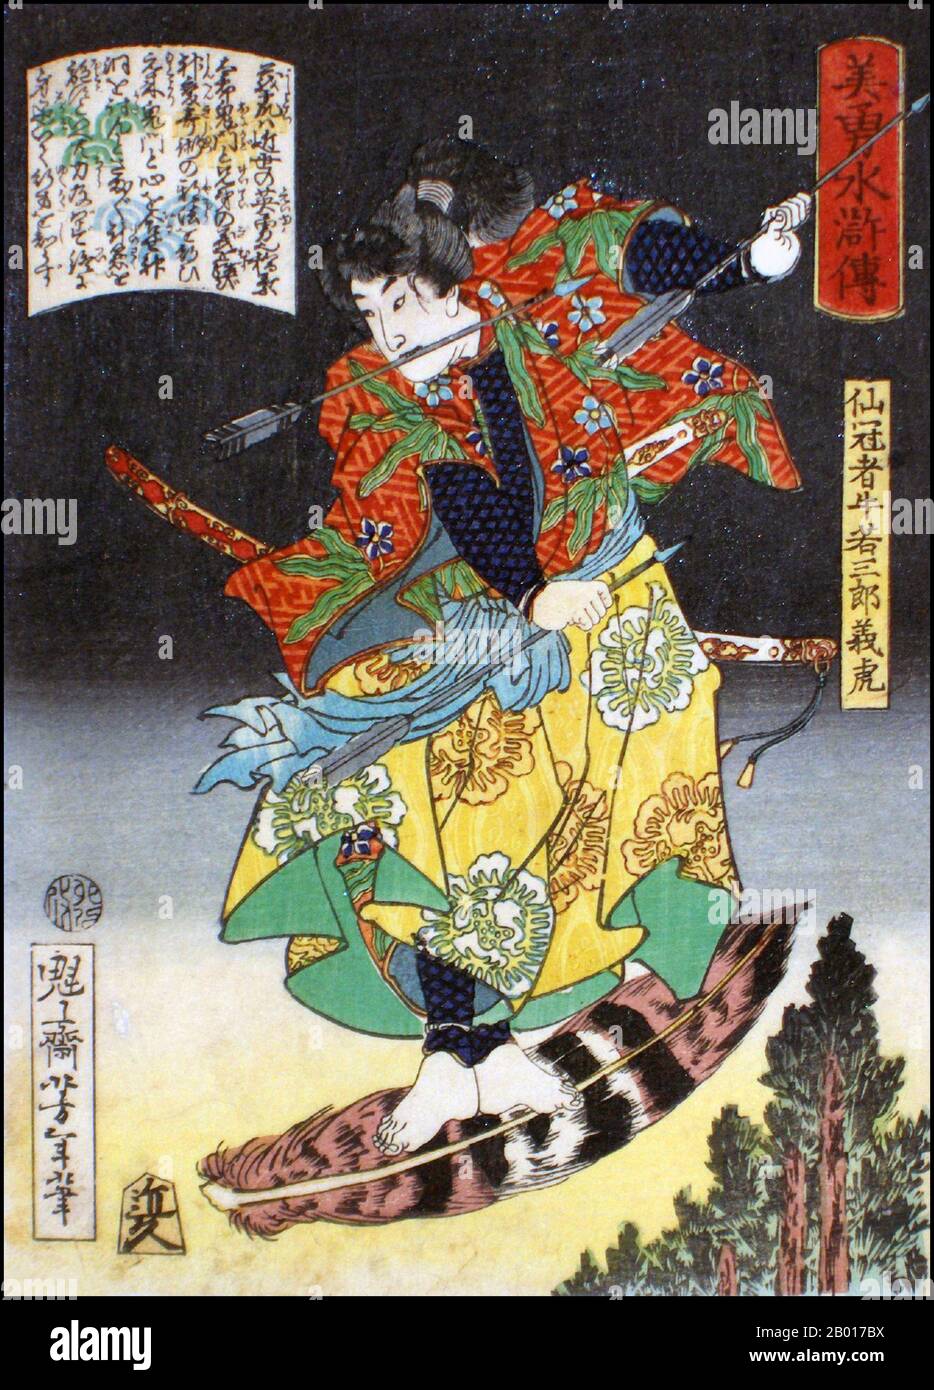 Japan: 'Der Krieger Senkanja Ushiwakasaburo Yoshitora'. Ukiyo-e Holzschnitt aus der Serie 'Heroes of the Water Margin' von Tsukioka Yoshitoshi (1839. - 9. Juni 1892), 1867. Tsukioka Yoshitoshi, auch Taiso Yoshitoshi genannt, war ein japanischer Künstler. Er ist weithin als der letzte große Meister des japanischen Holzschnitts Ukiyo-e anerkannt. Er gilt zudem als einer der größten Innovatoren der Form. Seine Karriere umfasste zwei Epochen – die letzten Jahre des feudalen Japans und die ersten Jahre des modernen Japans nach der Meiji-Restauration. Stockfoto